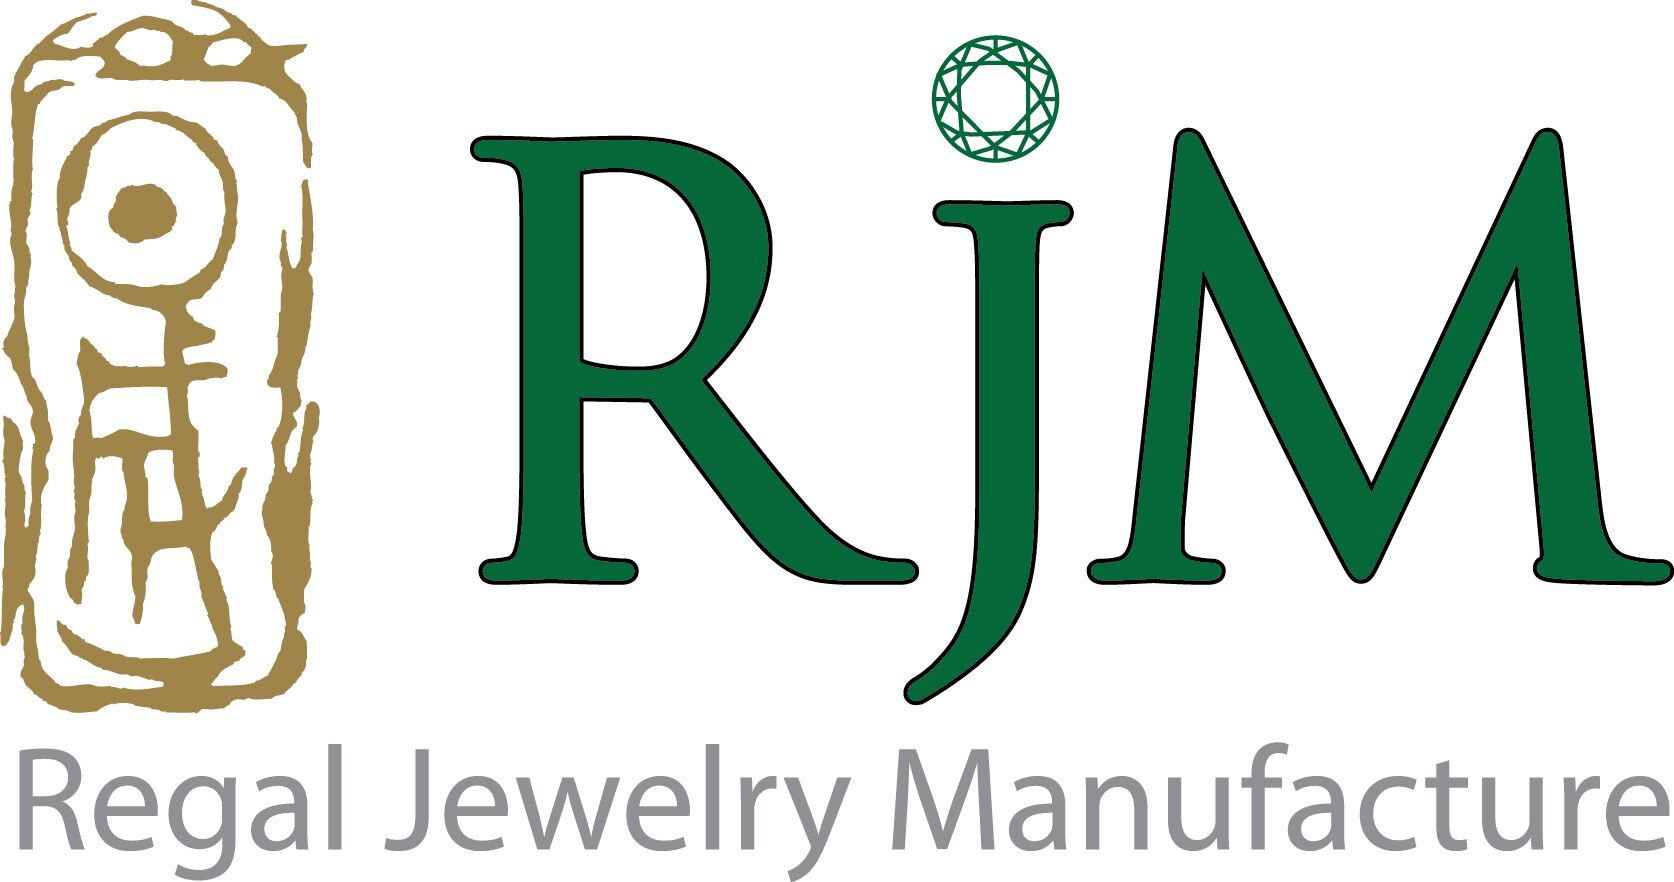 Regal Jewelry Manufacture Co., Ltd. logo โลโก้